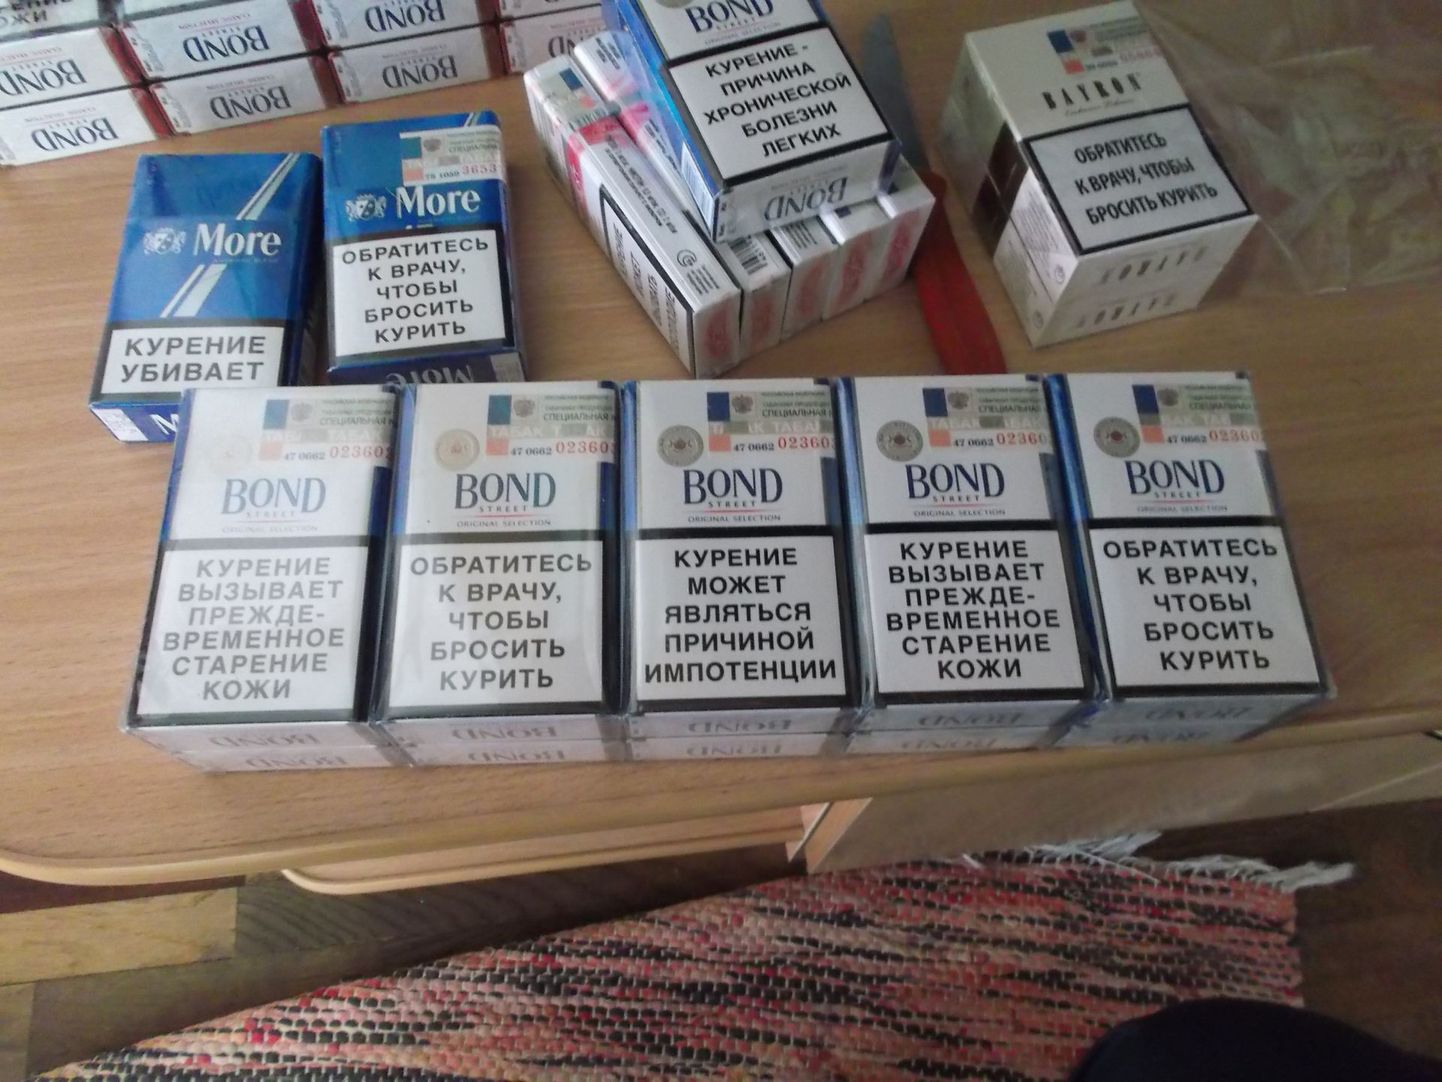 Venemaa maksumärkidega sigaretid.